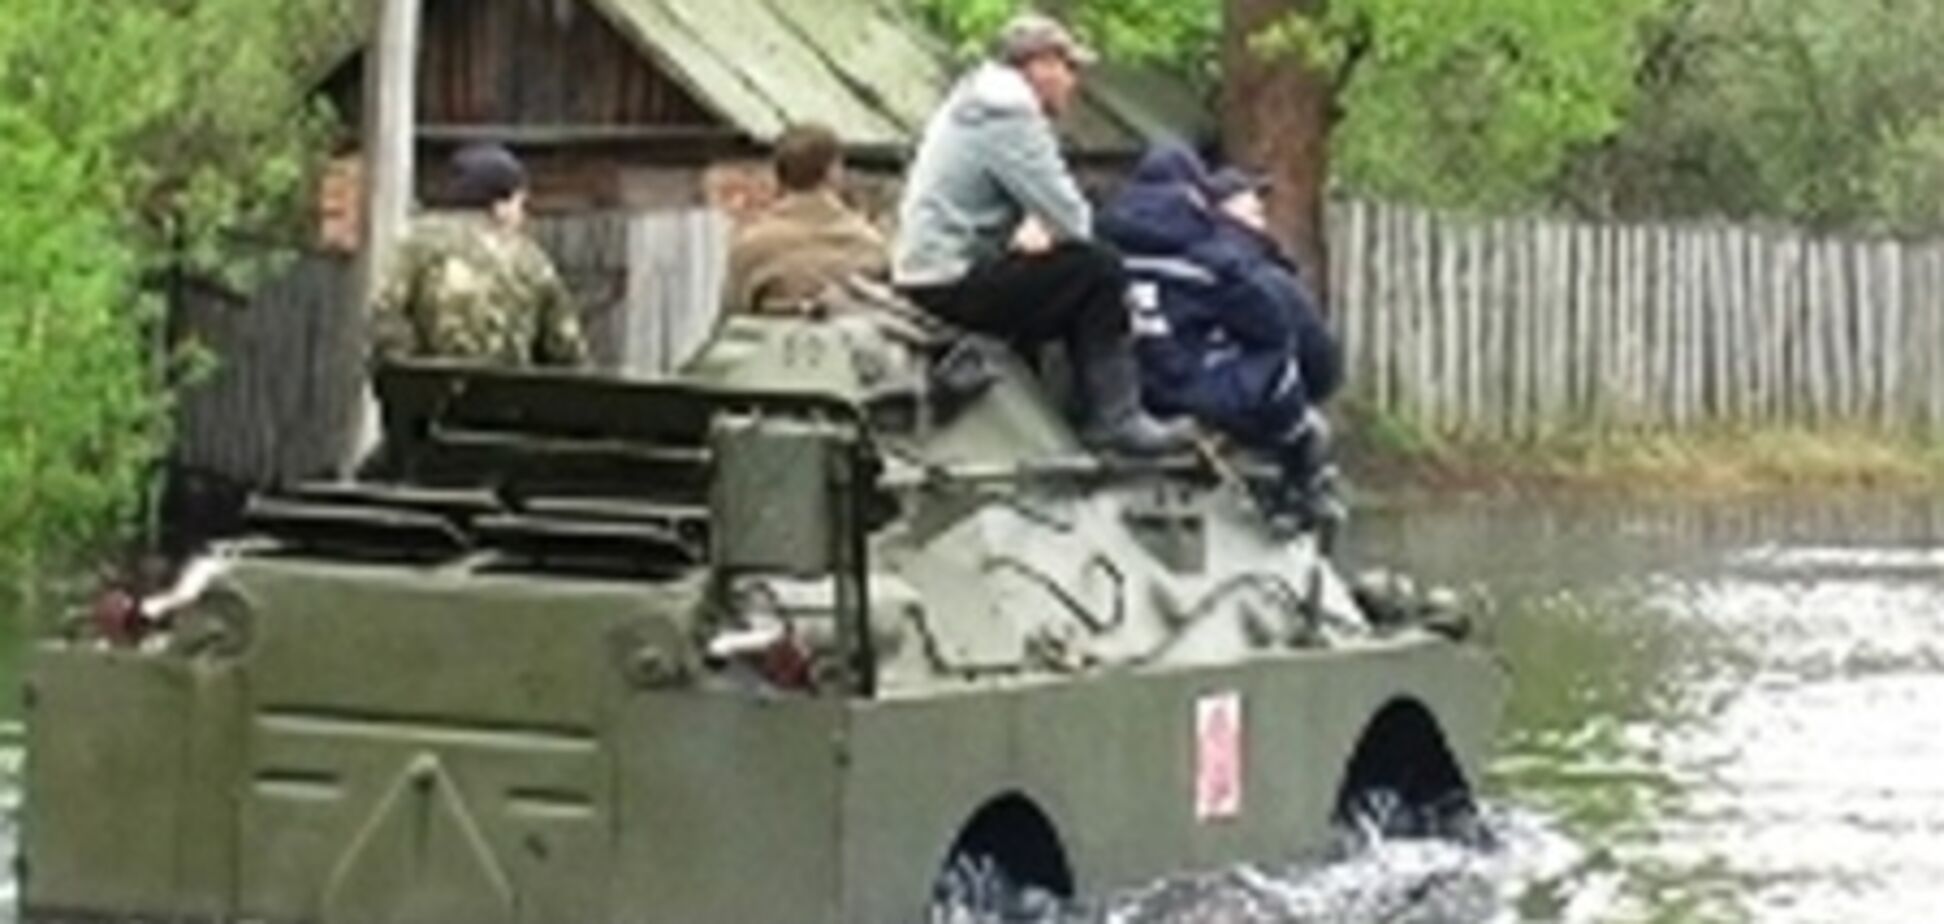 На Чернігівщині через розлив Дніпра по вулицях плавають бронеавтомобілі 